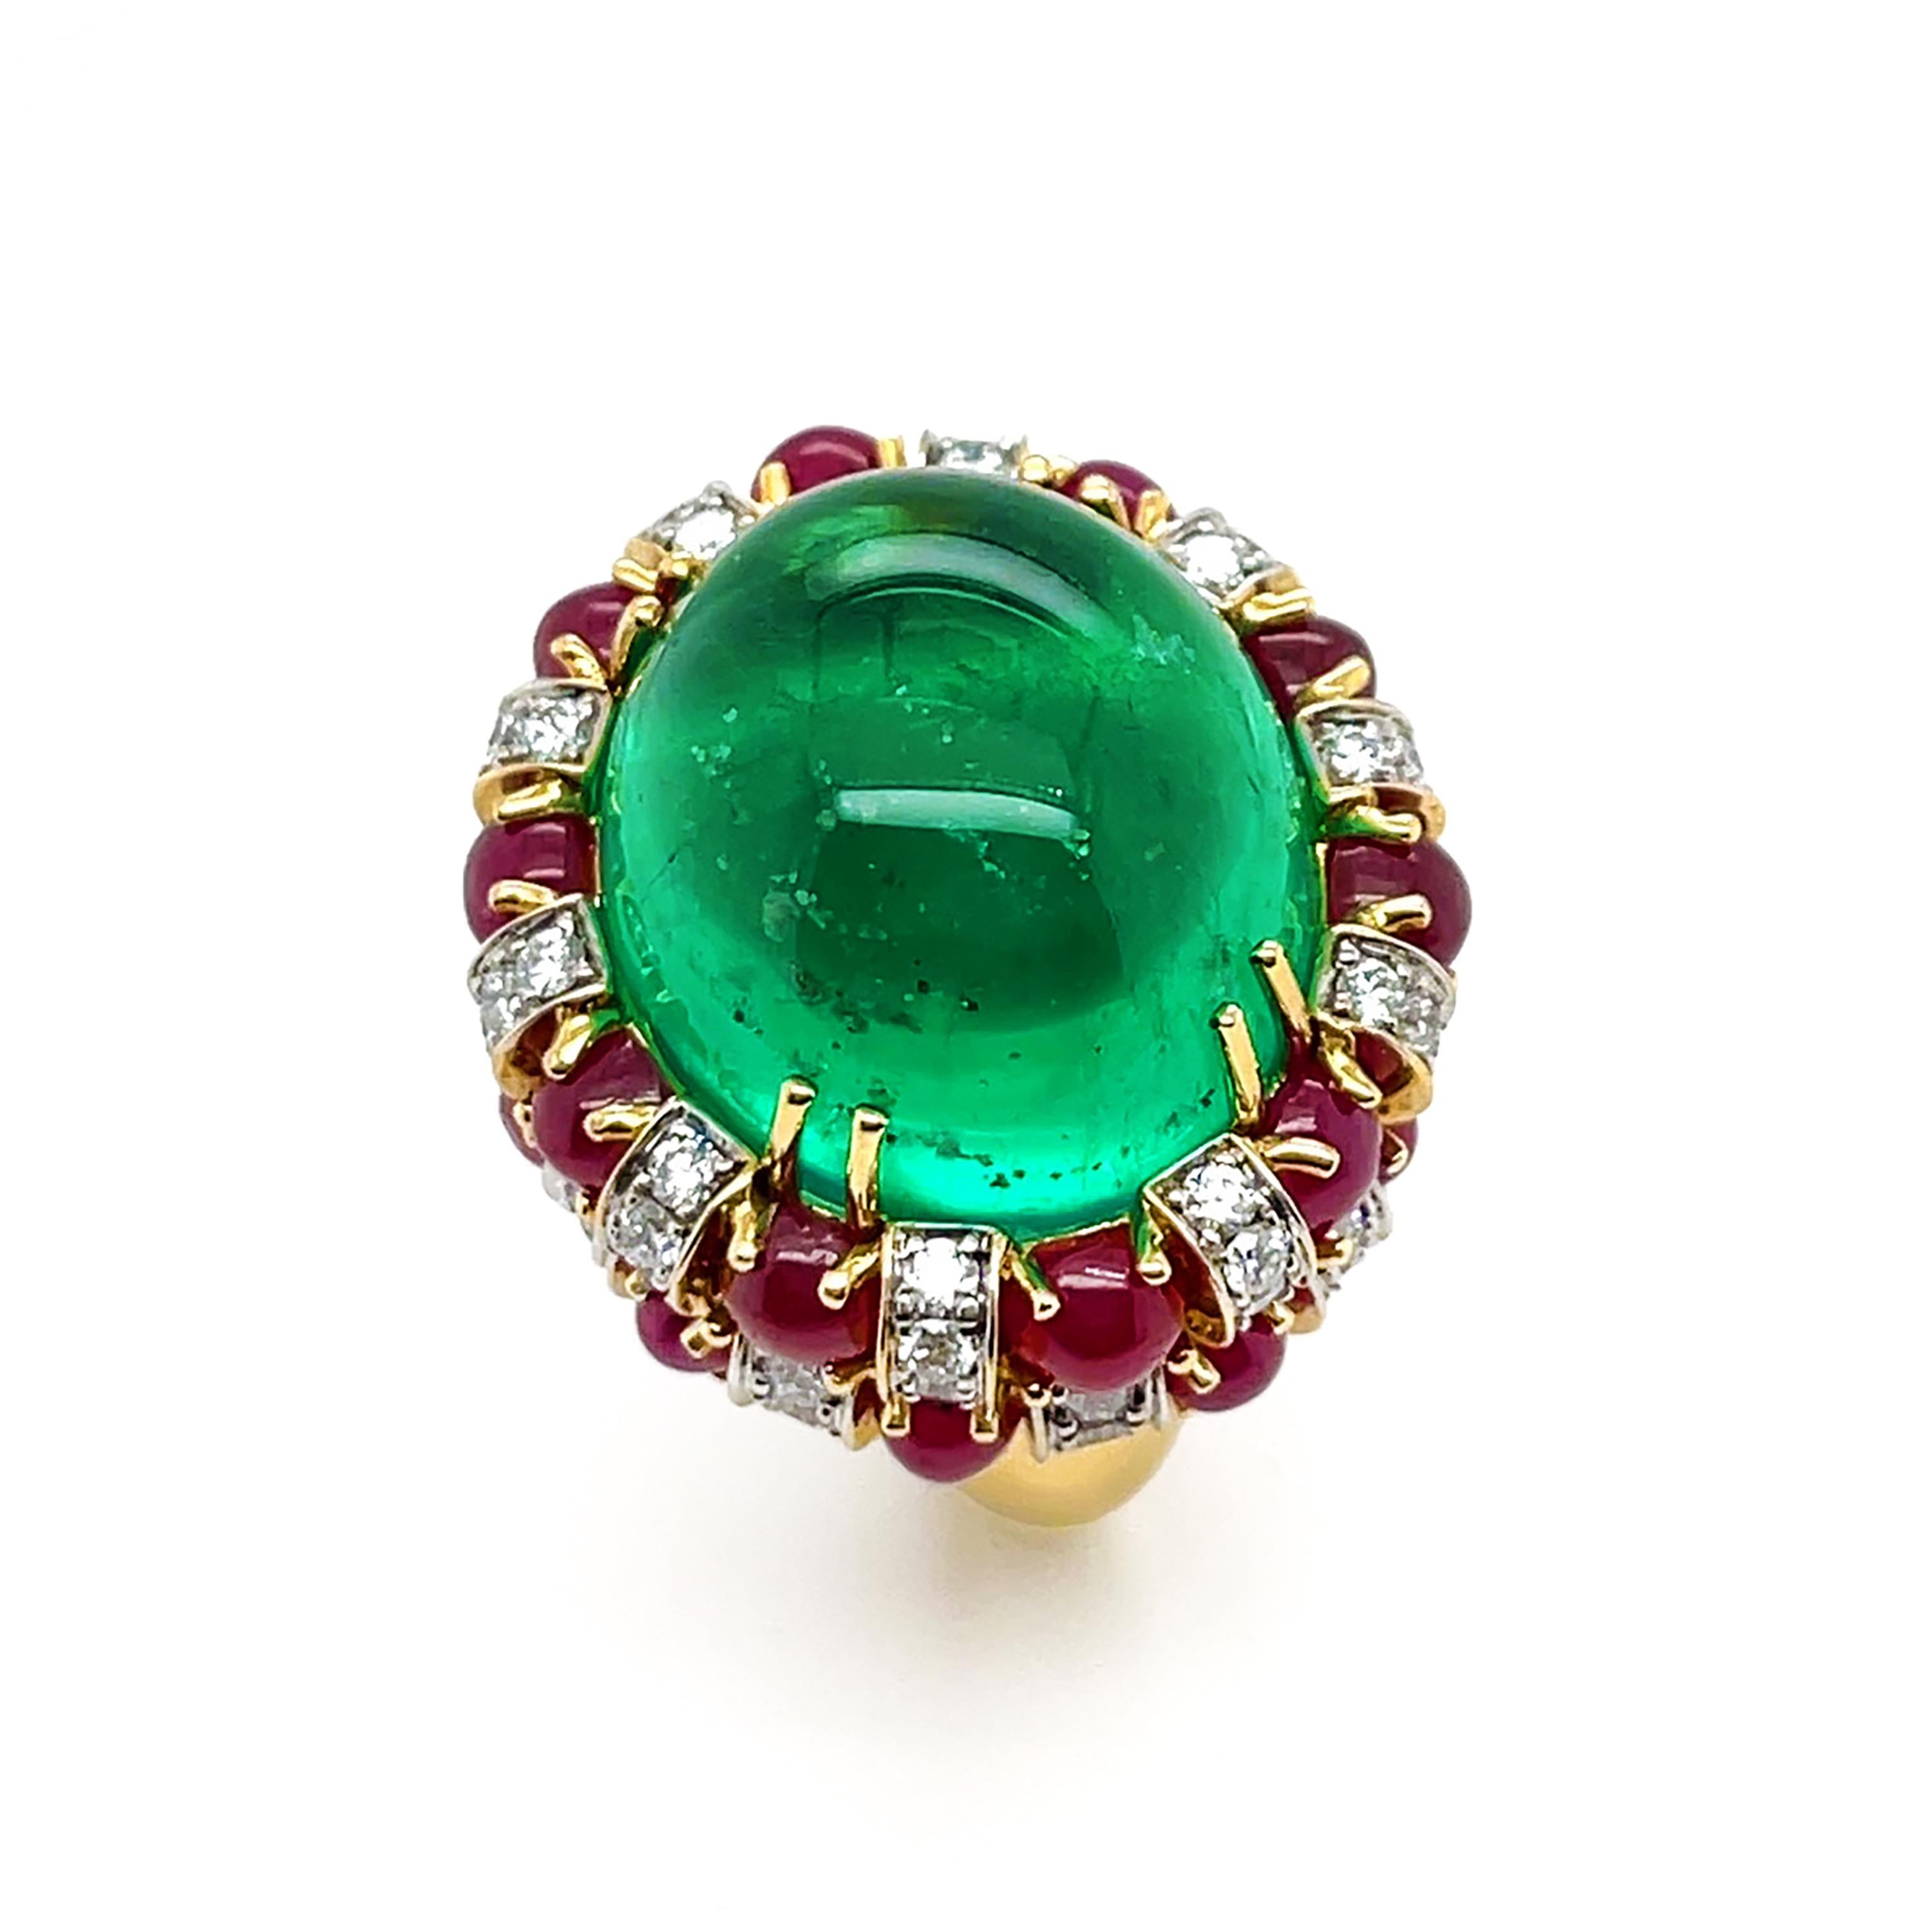 Ein kostbarer Smaragd aus Kolumbien ist das Herzstück dieses Rings. Der erhabene ovale Cabochon ist in Zacken aus 18 Karat Gelbgold gefasst und zeigt seine einzigartigen Einschlüsse. Zwei Reihen von Rubin-Cabochons und gepflasterten Diamanten drehen